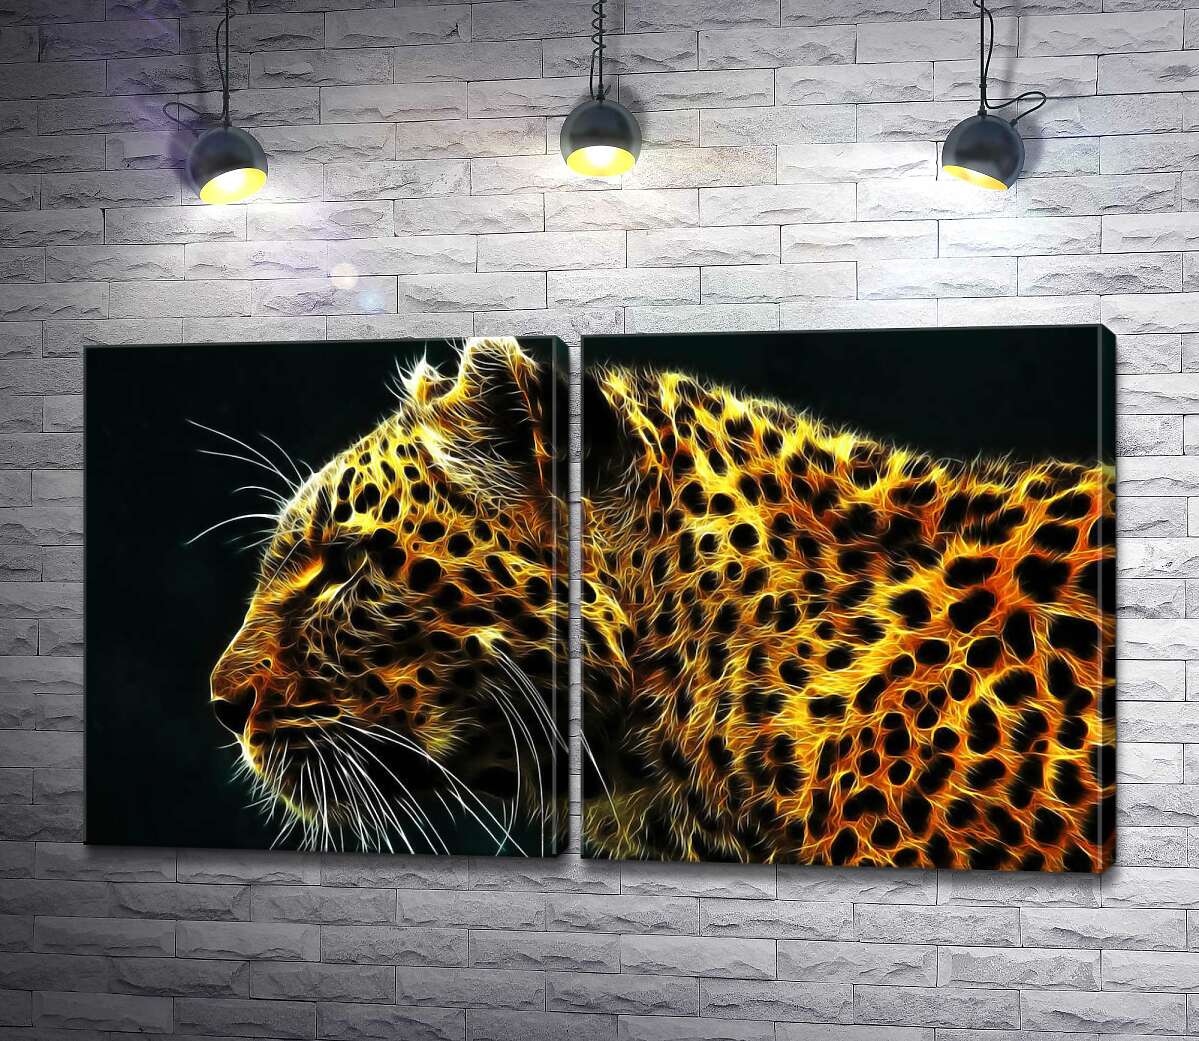 модульная картина Темные пятна на огненно-желтой шерсти леопарда